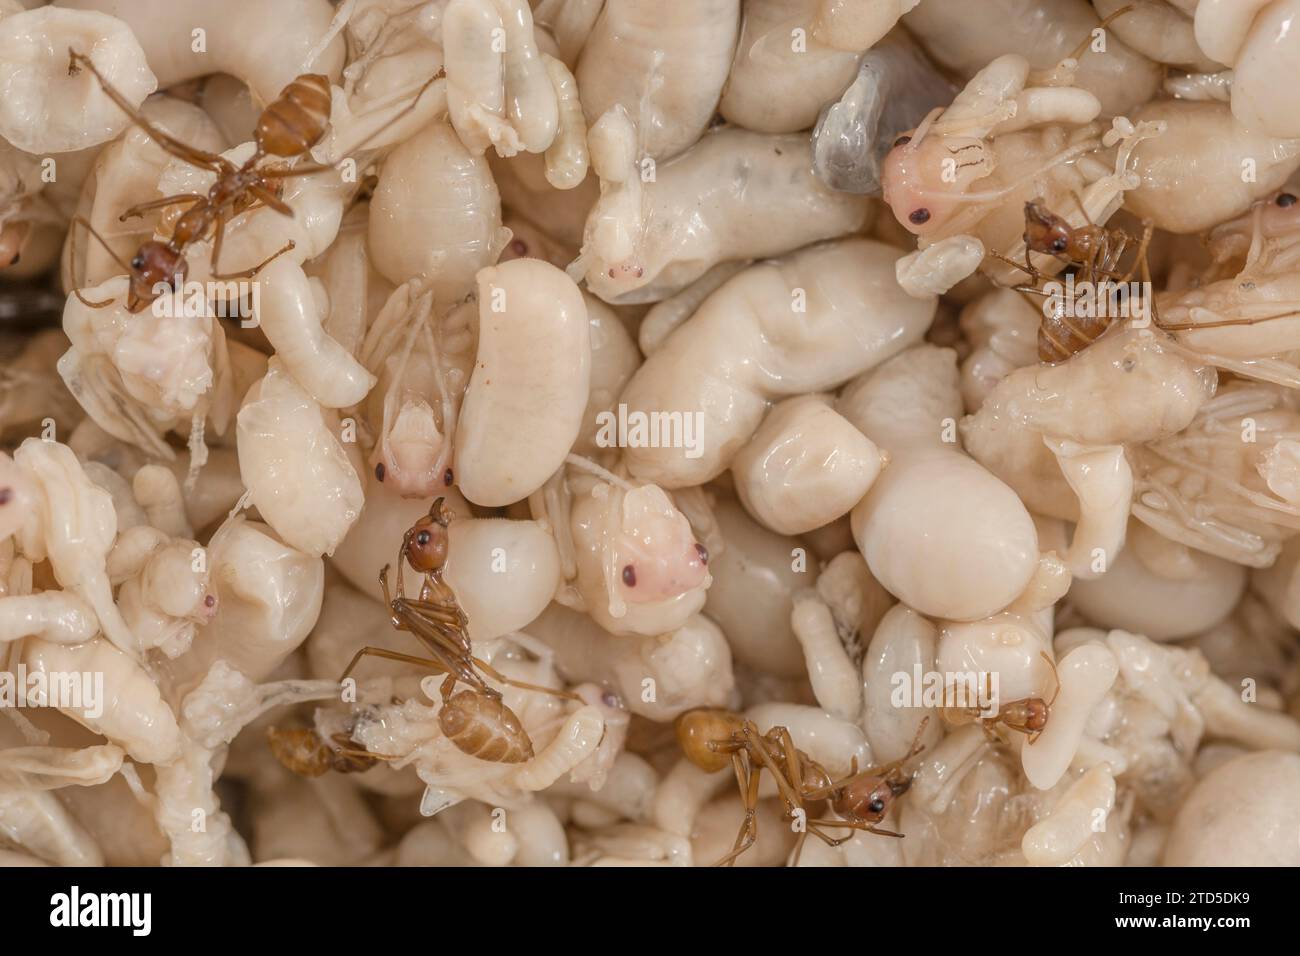 Primo piano di pupe di formiche, larve e adulti. Non so quali specie, tranne le larva, siano lunghe più di 1 cm, in Thailandia vendute come Kai Mod Dang e utilizzate come snack. Foto Stock